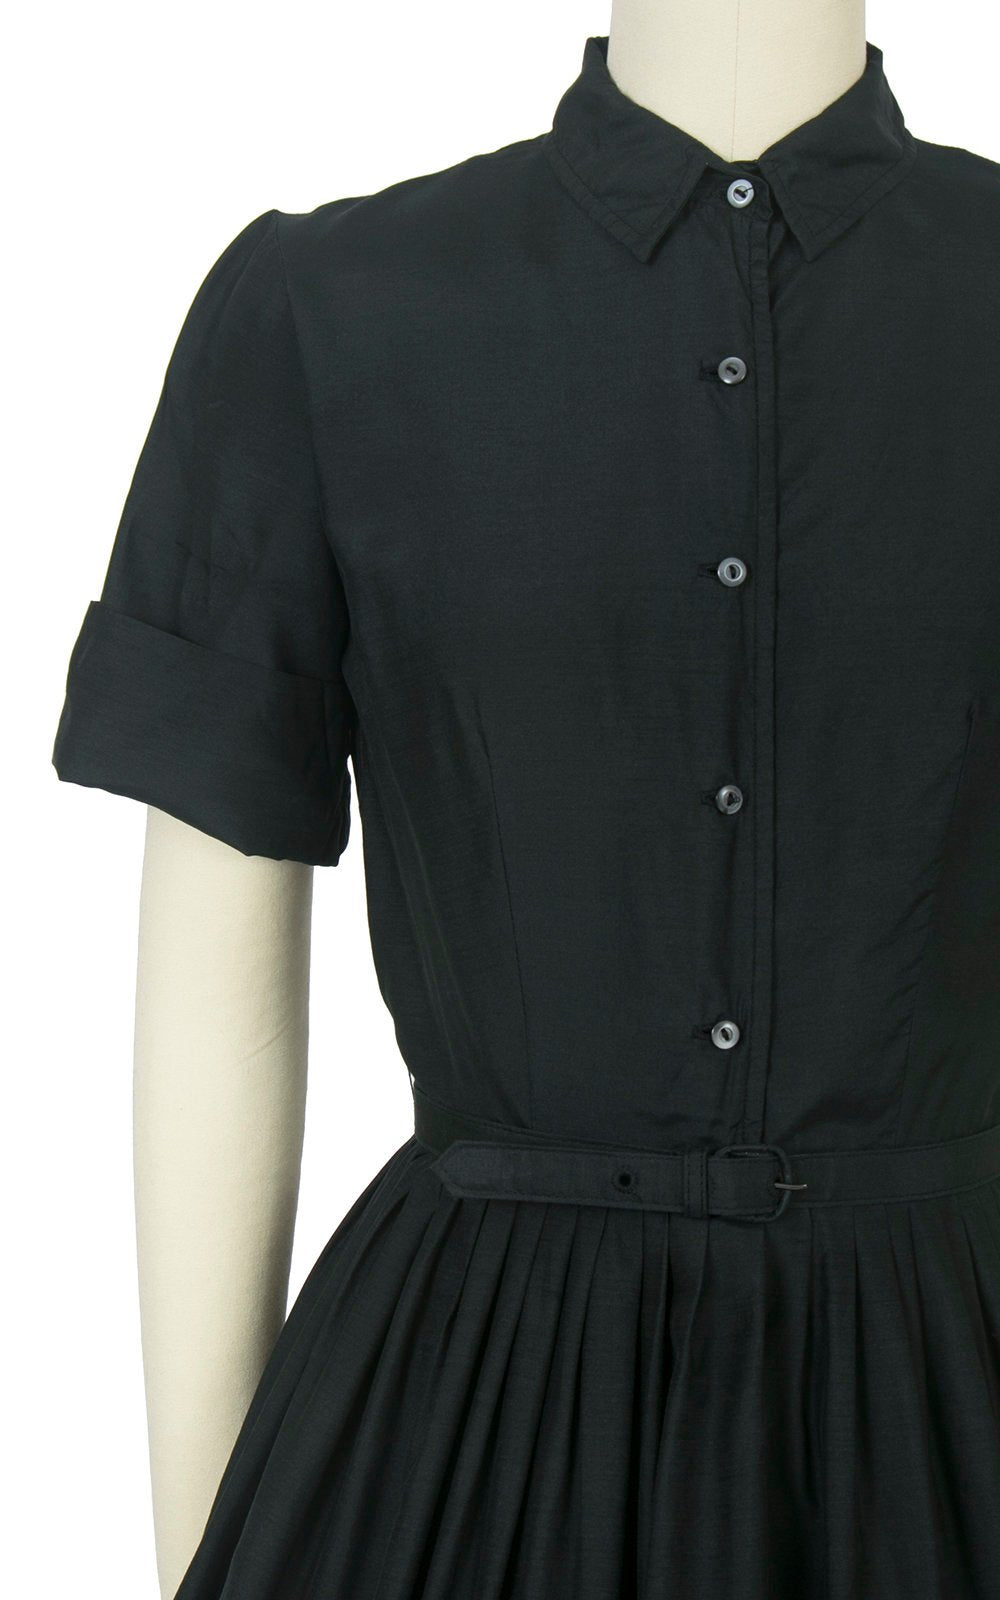 Vintage 1950s Dress | 50s Black Silk Shirt Dress Full Skirt Shirtwaist Day Dress (x-small)